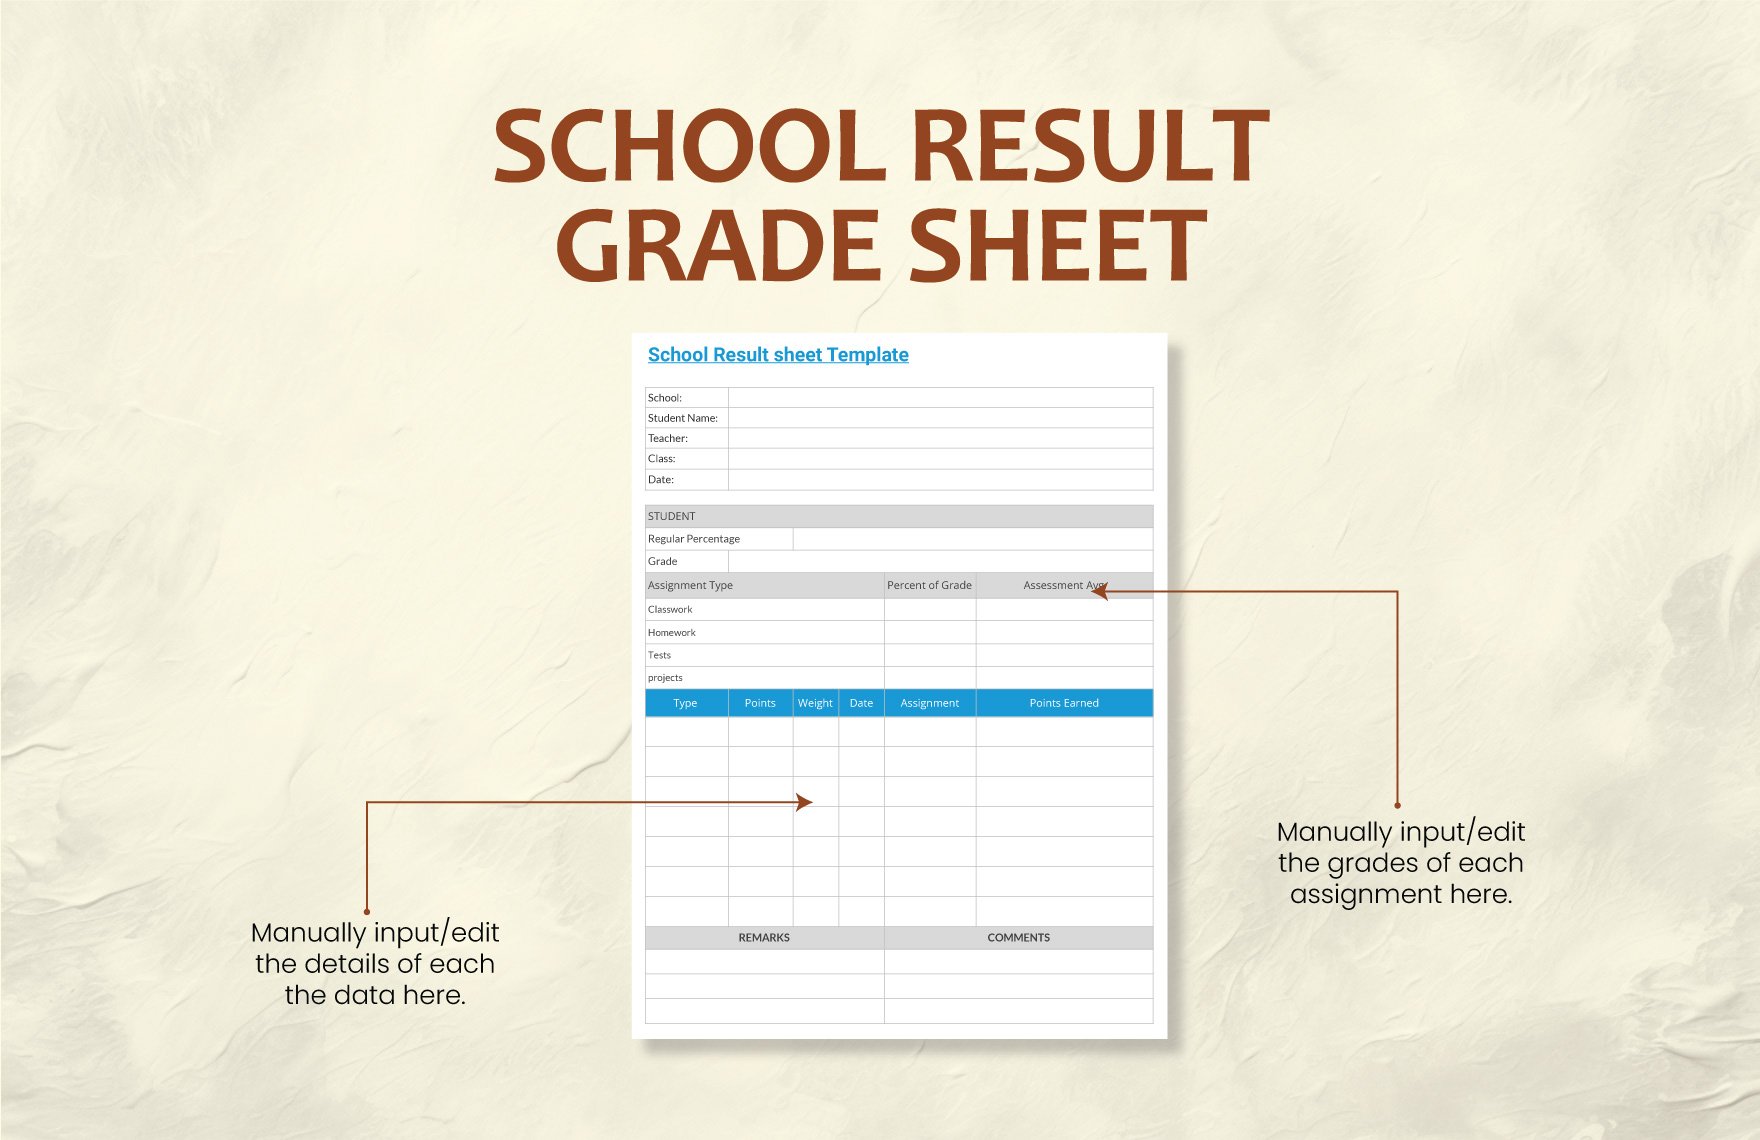 School Result Grade Sheet Template